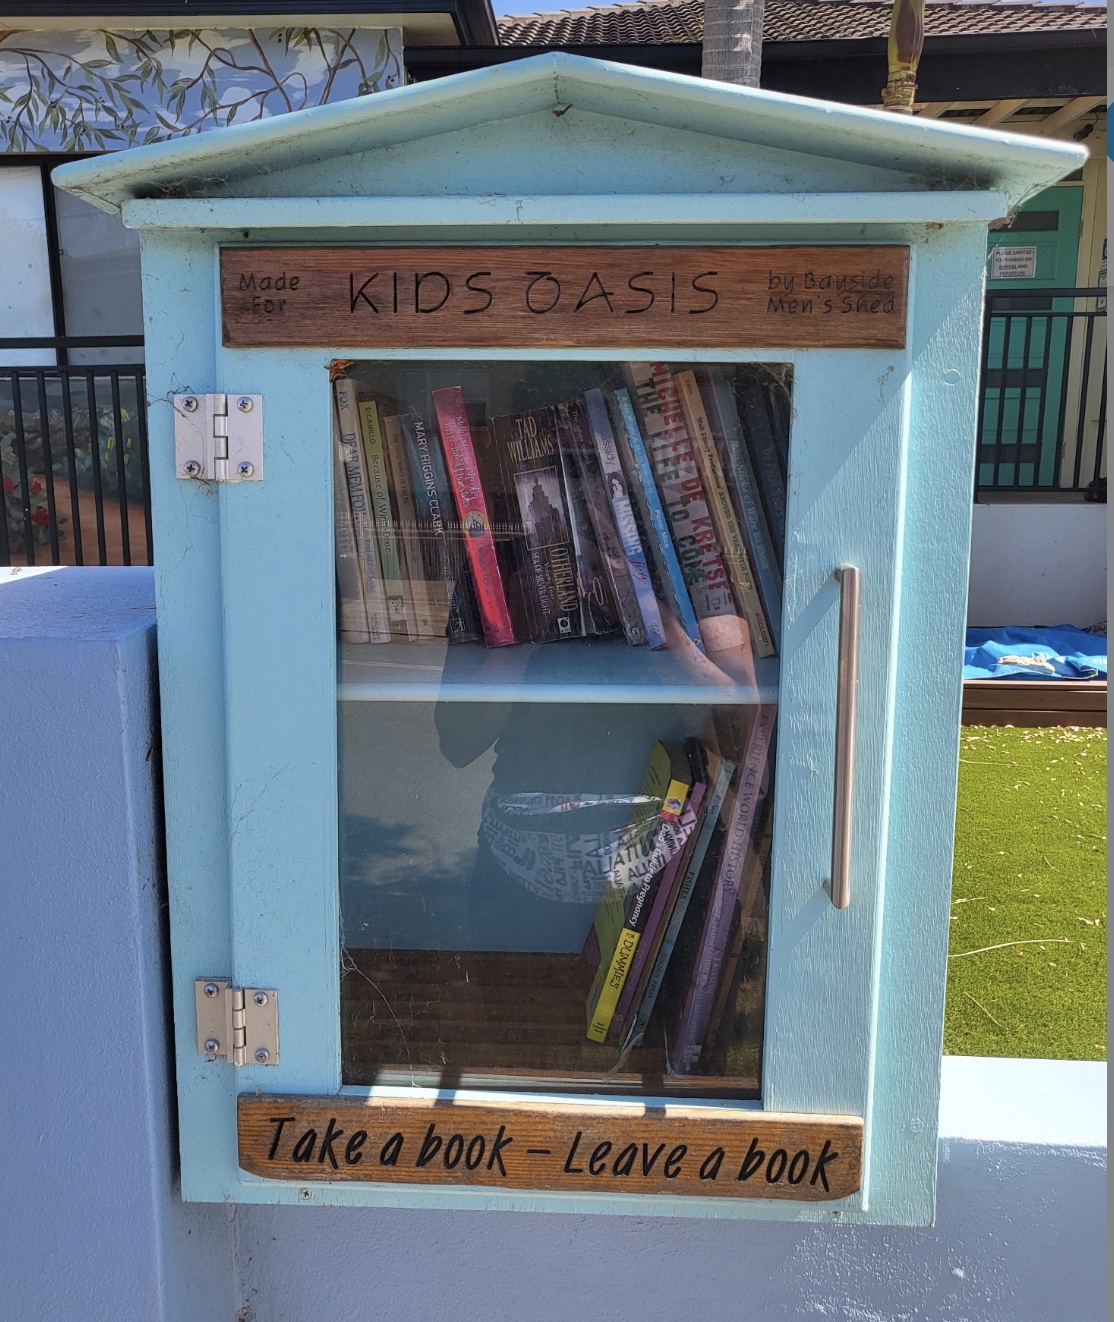 Kid's Oasis Street Library in Kingsgrove.